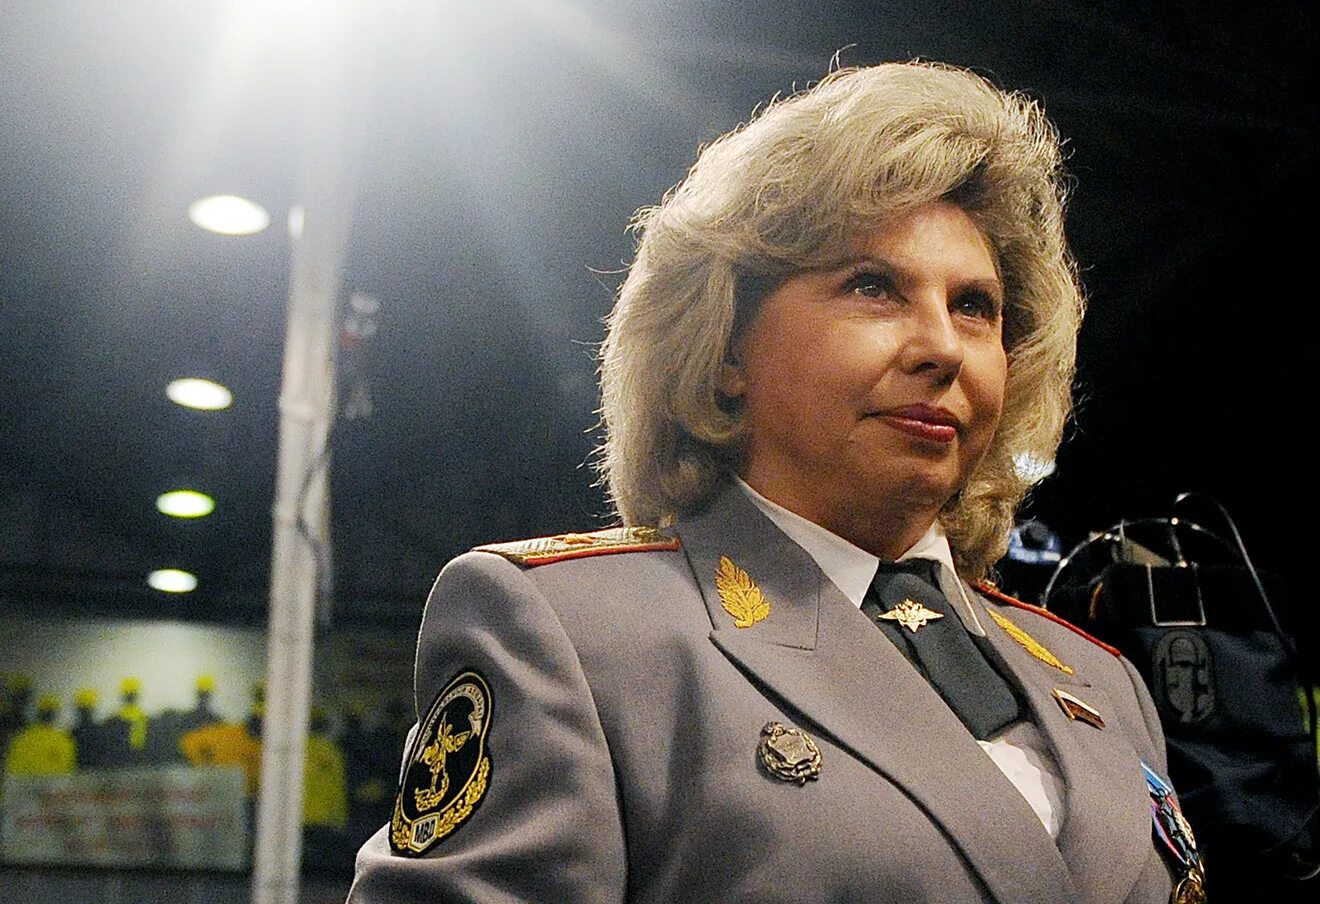 Женщины генералы мвд россии. Генерал полиции Москалькова.